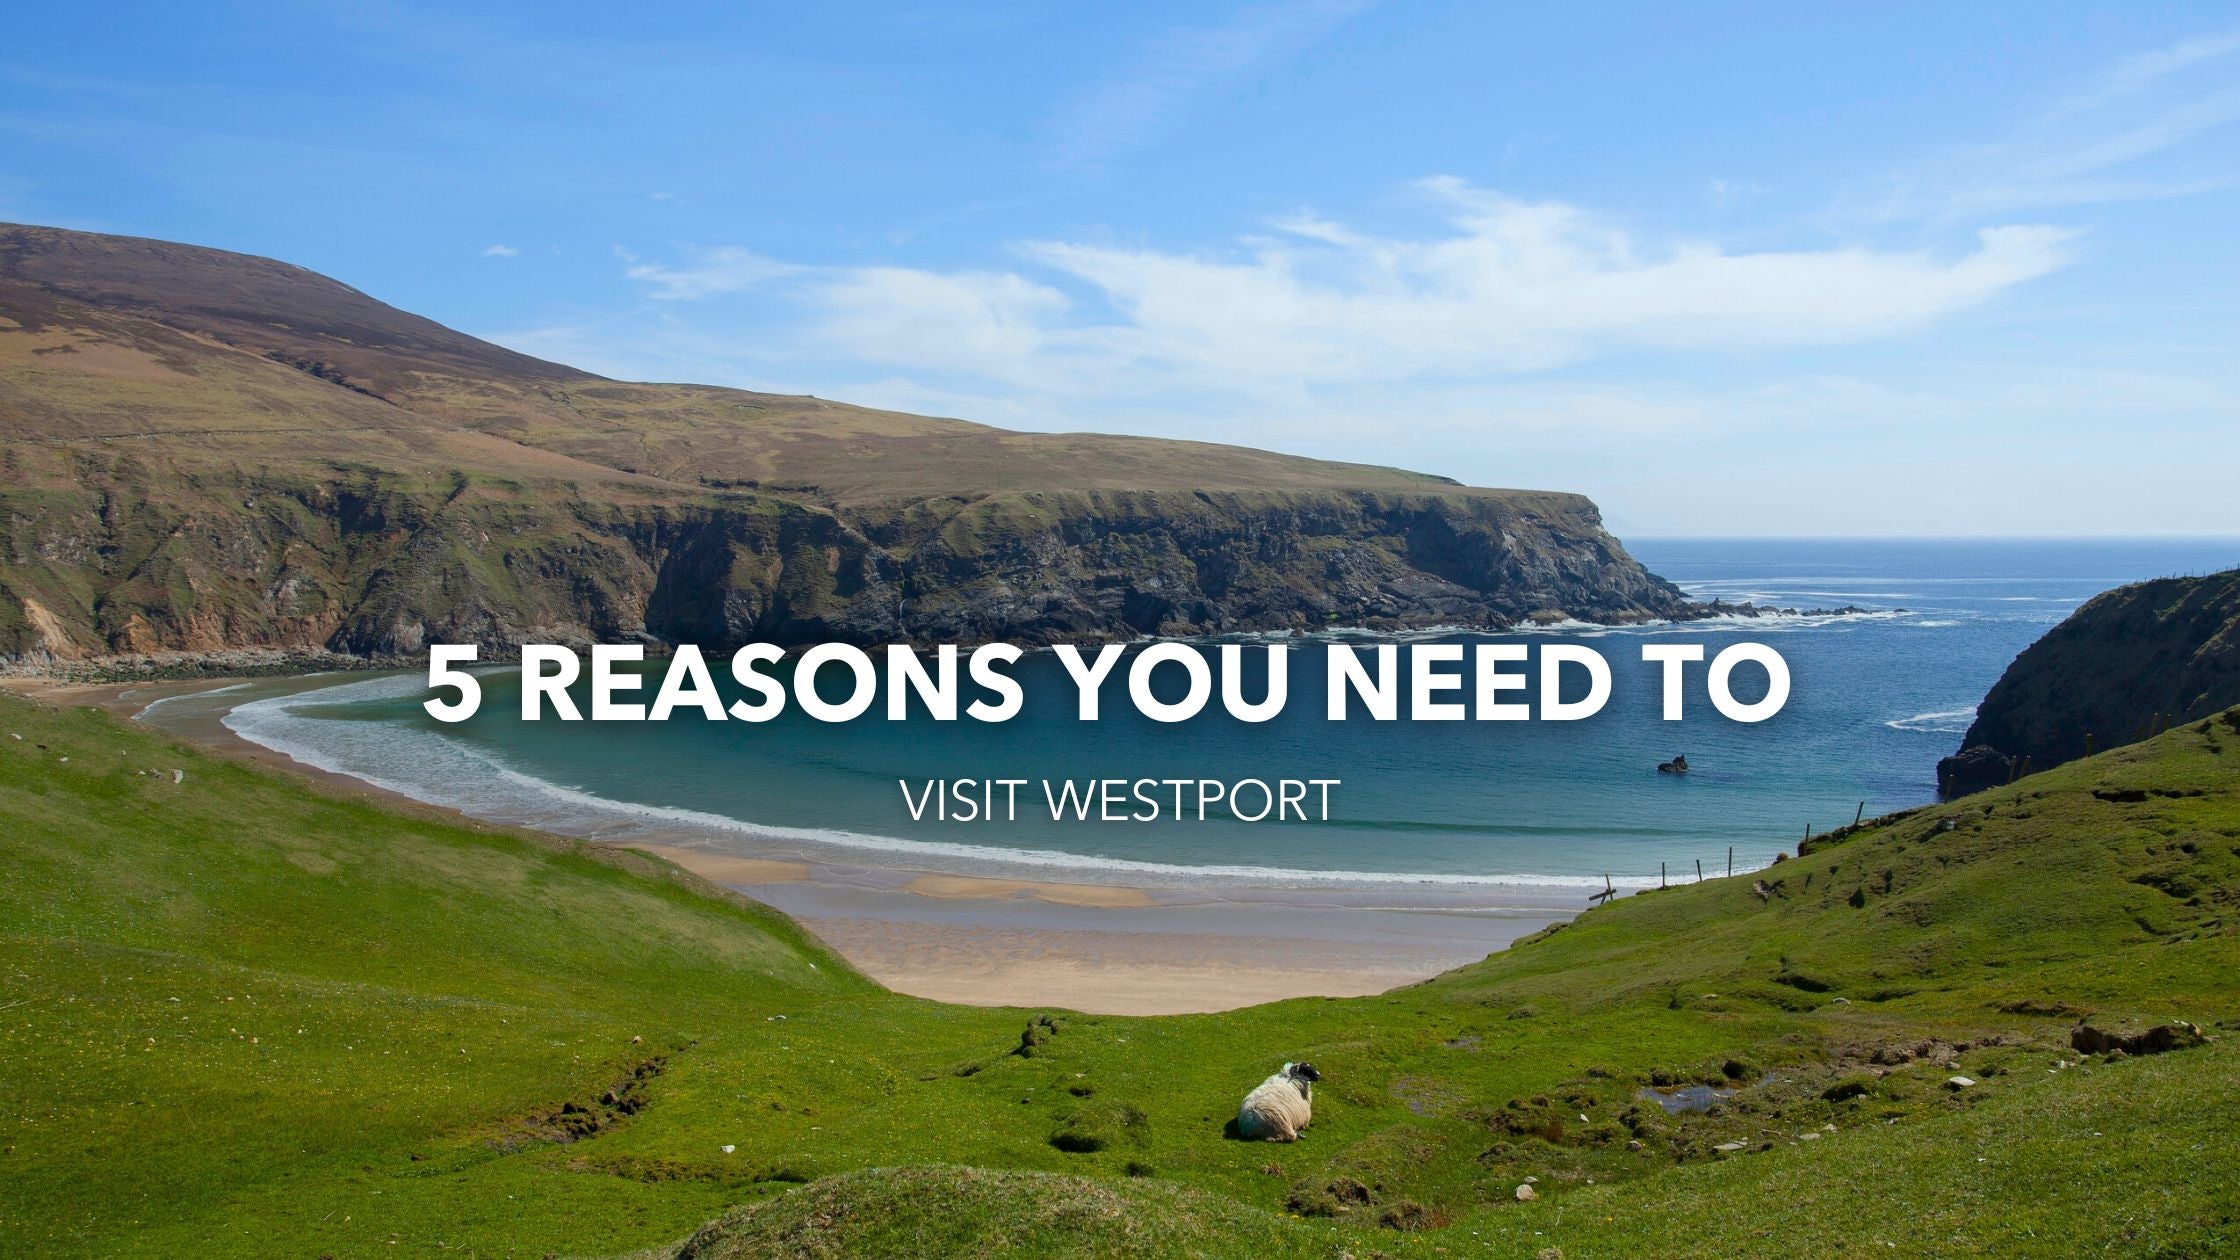 5 Reasons You Need to Visit Westport